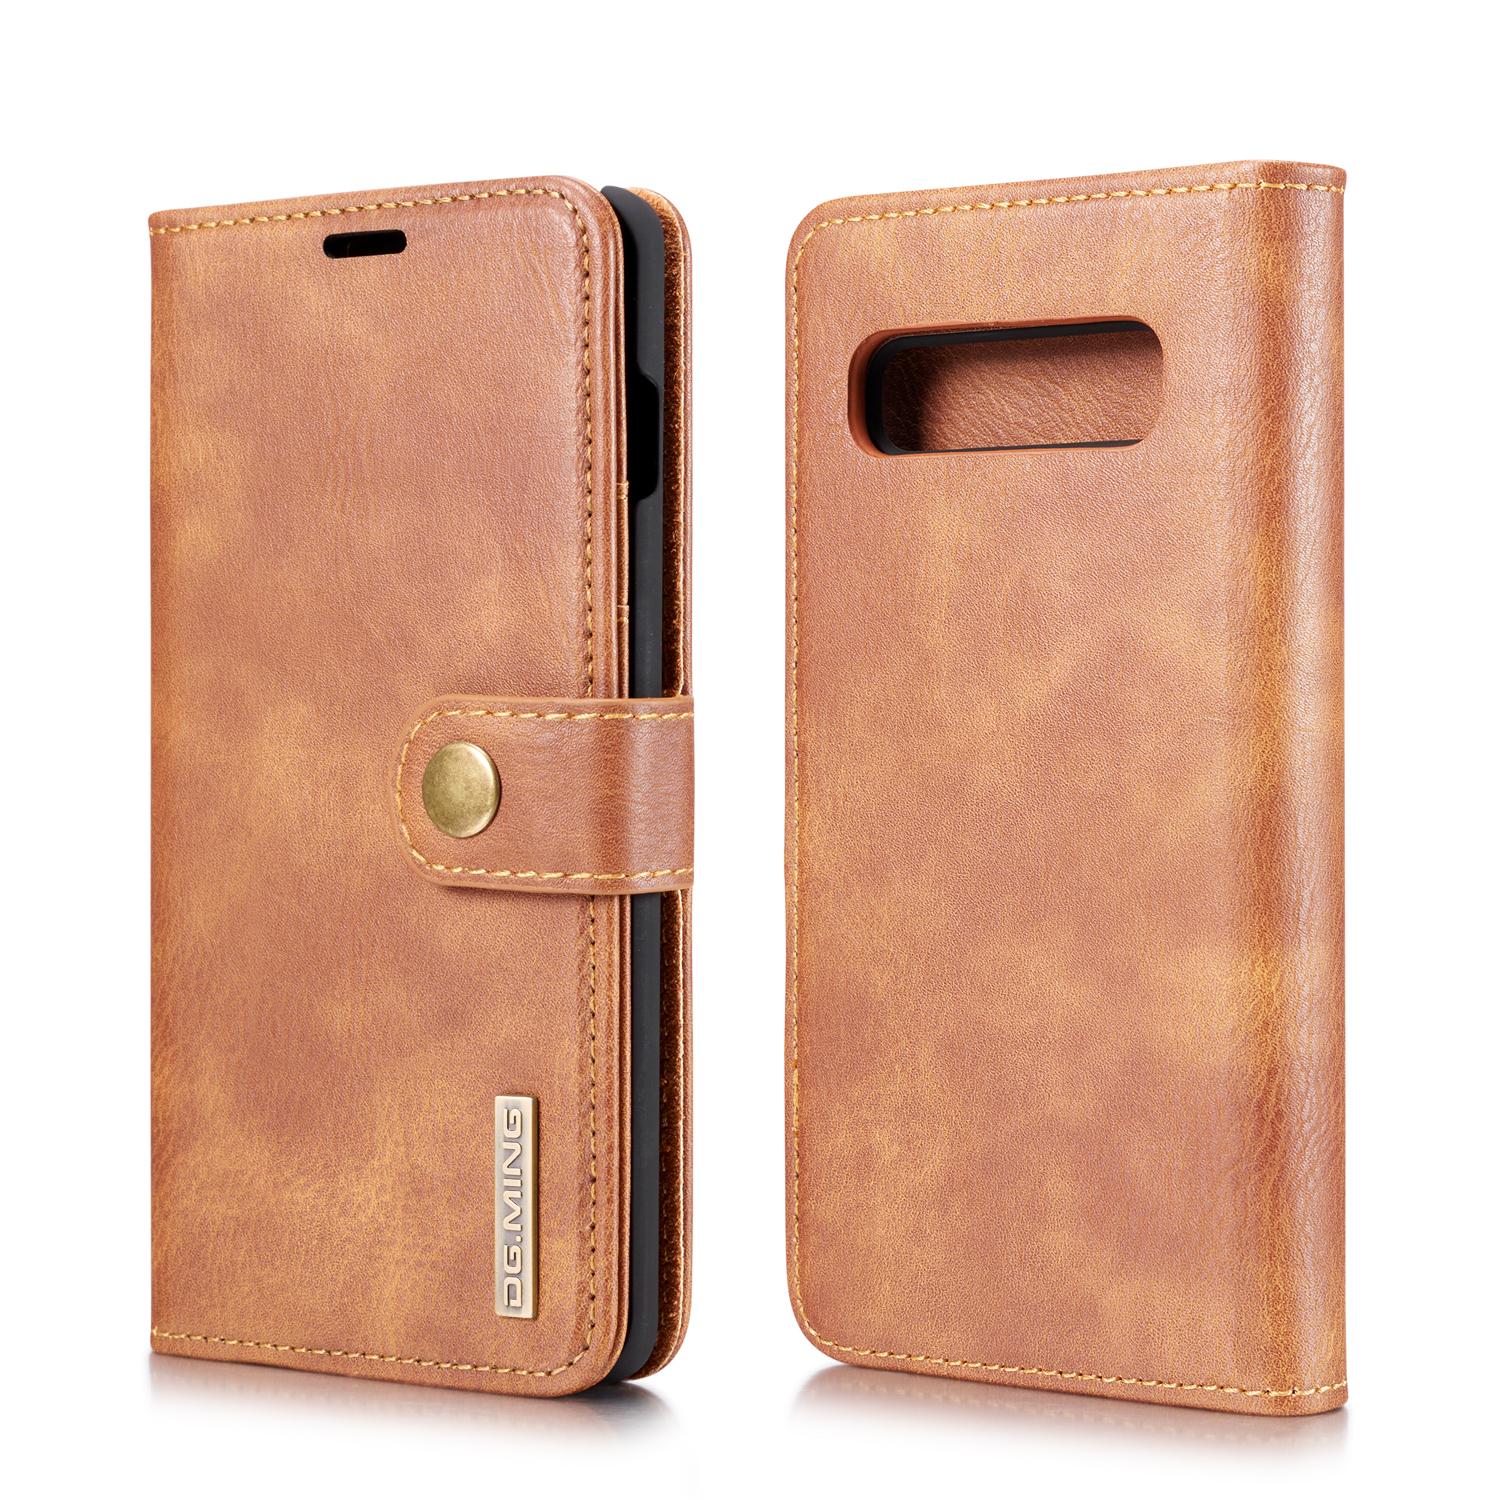 Samsung Galaxy S10 Plånboksfodral med avtagbart skal, cognac